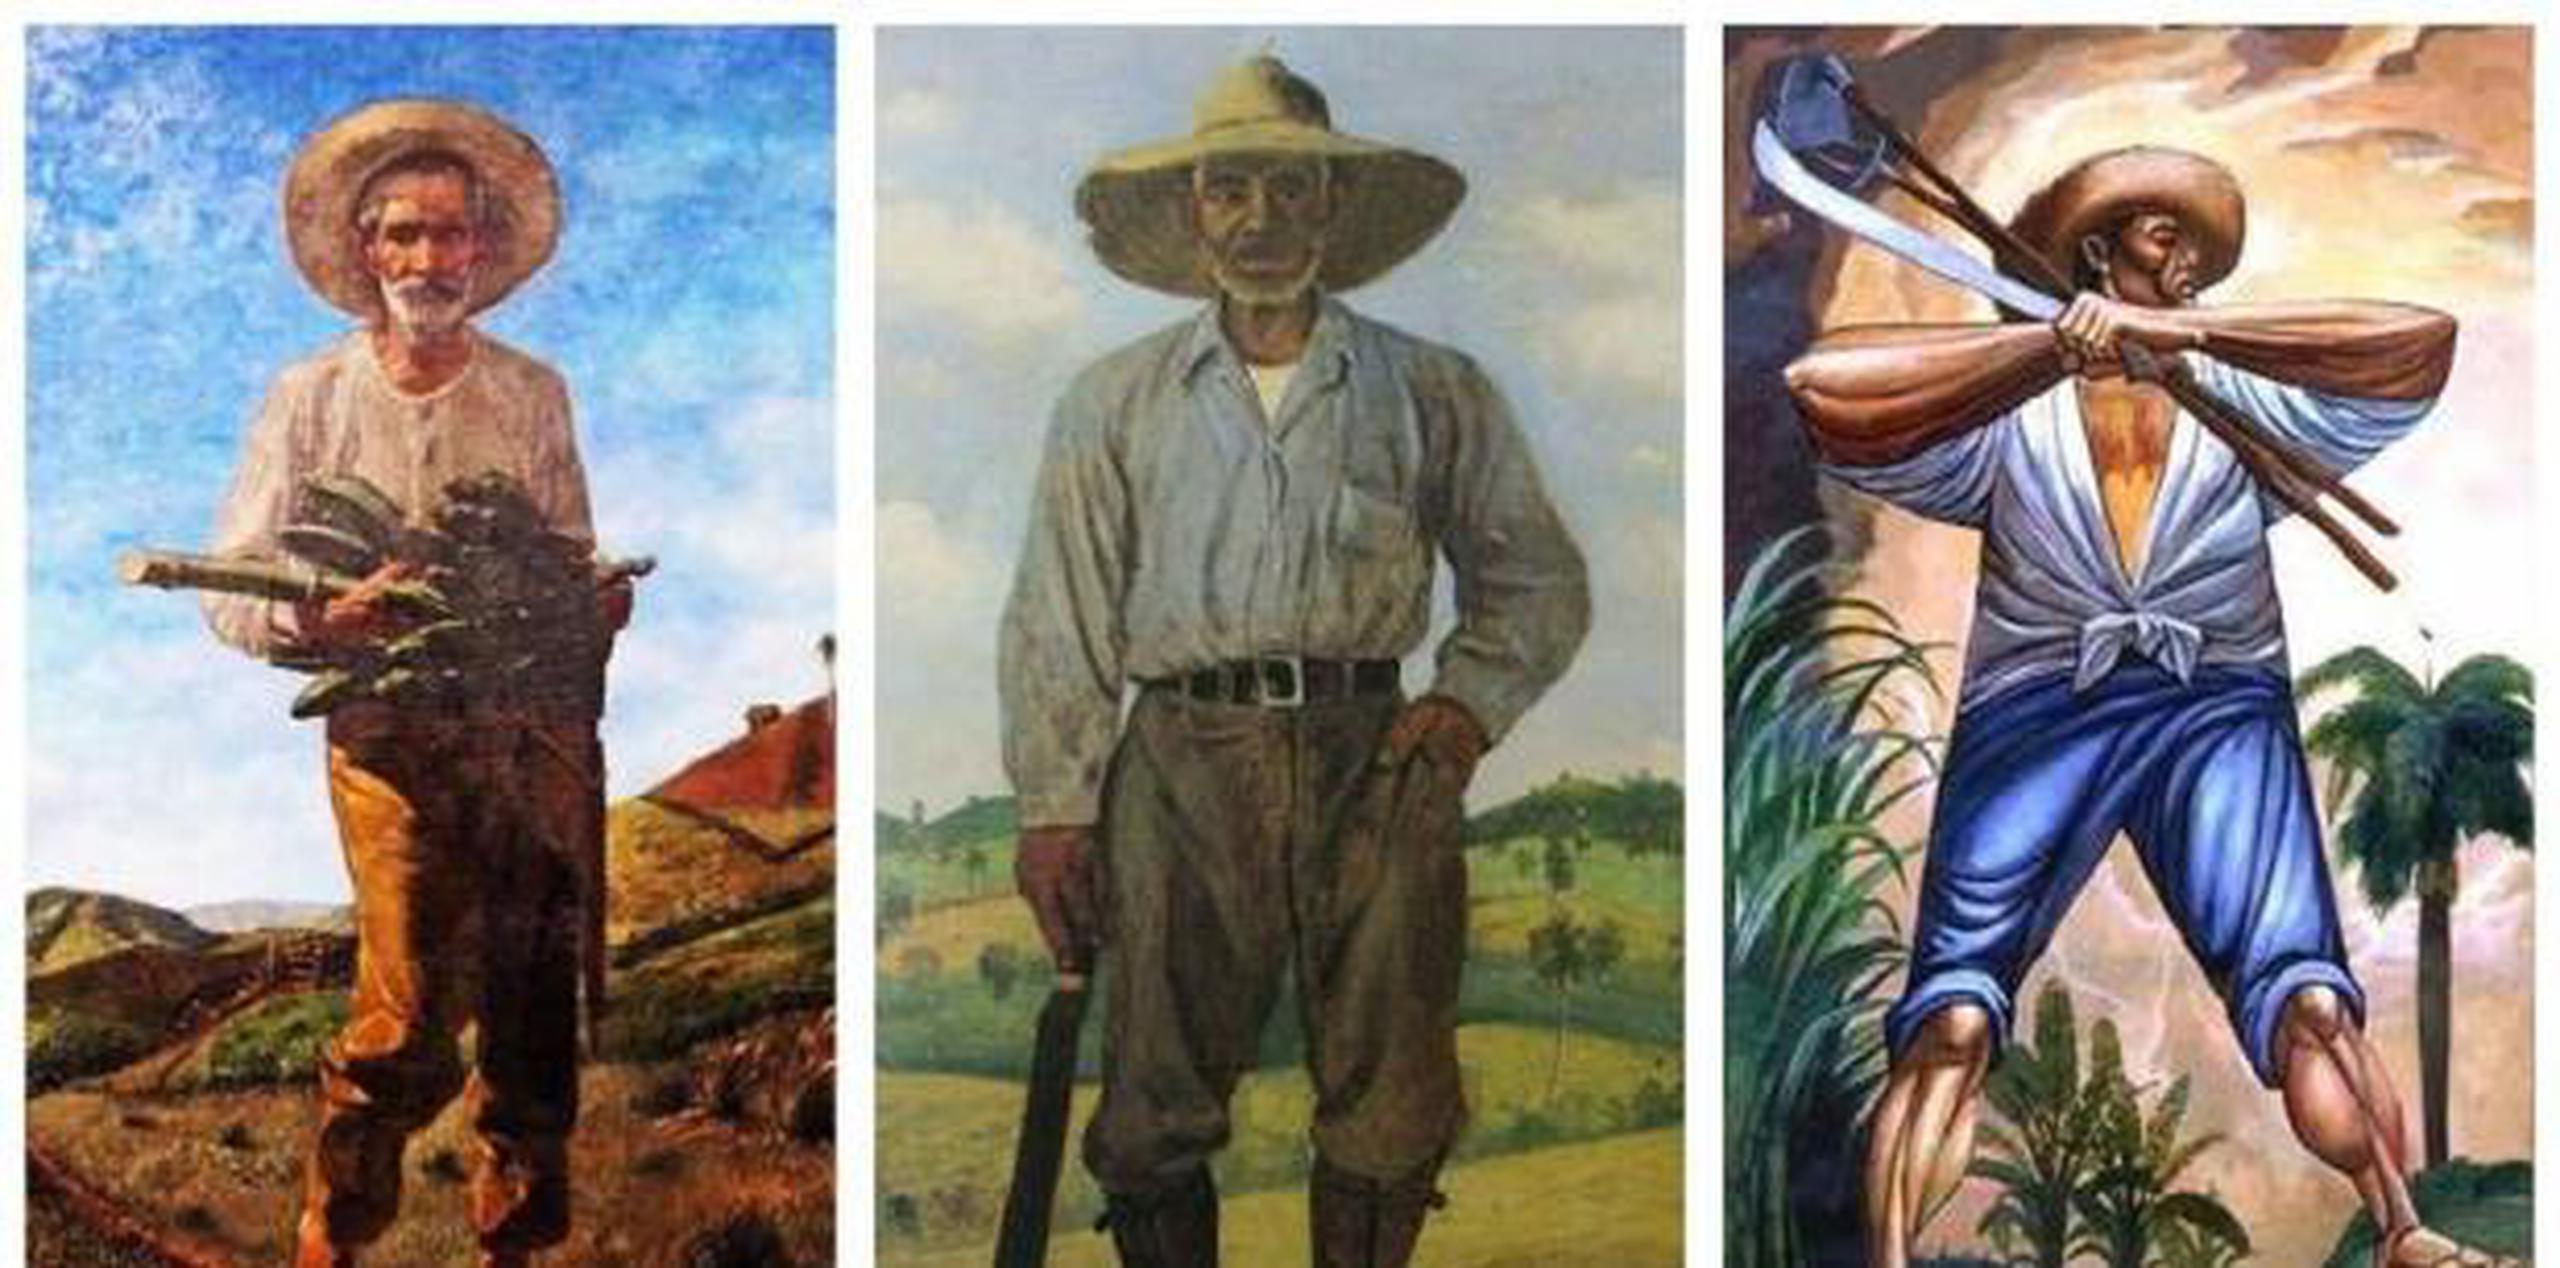 La obra emblemática del pintor es ''El pan nuestro (1905)'', que presenta la imagen del campesino puertorriqueño, el jíbaro. (Suministrada)